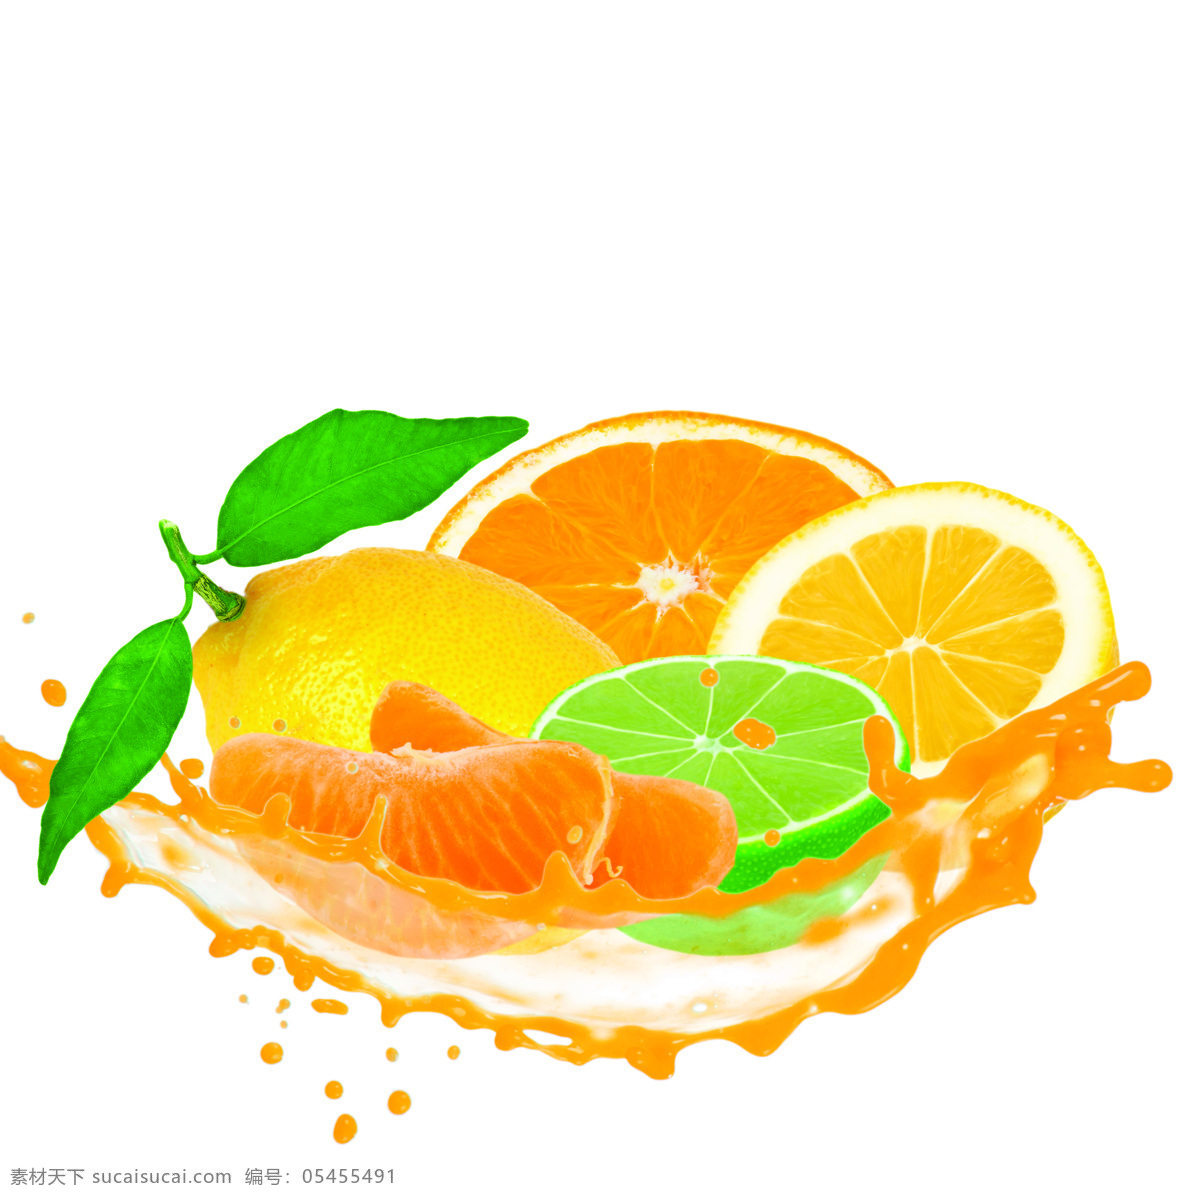 水果 广告 背景 橙子 柠檬 叶子 水果广告 水果素材 水果摄影 果汁 饮料 水果蔬菜 餐饮美食 白色